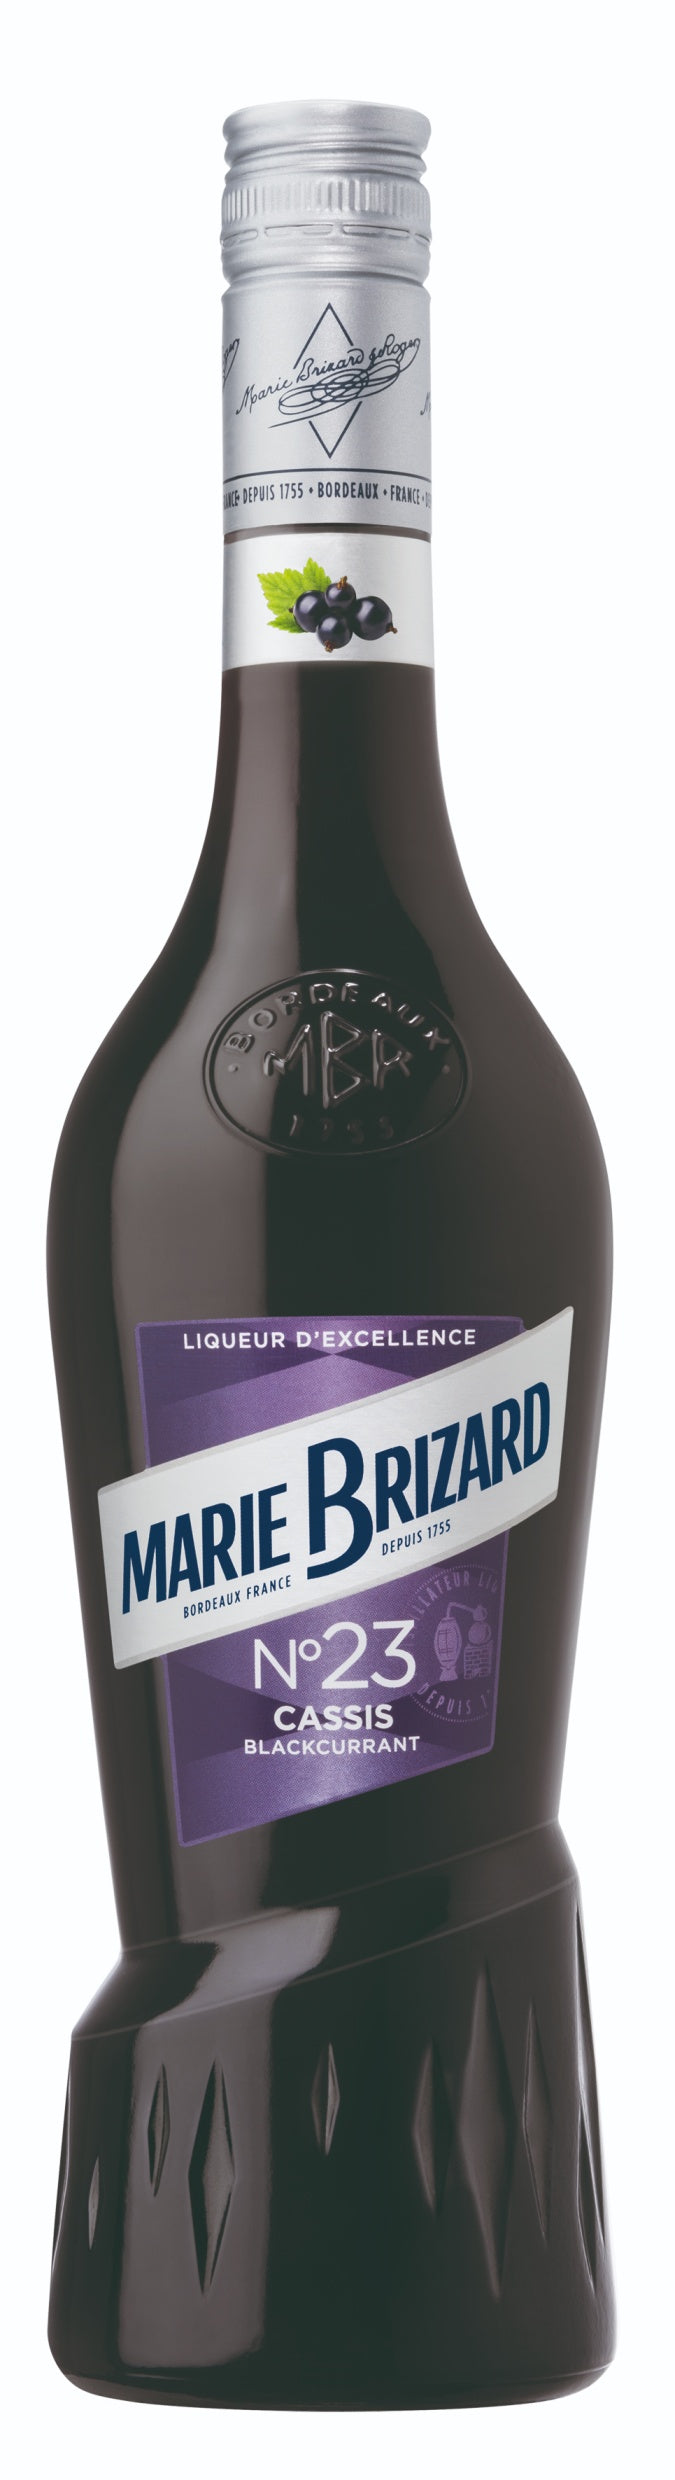 MARIE BRIZARD LIQUEUR CREME DE CASSIS 70CL